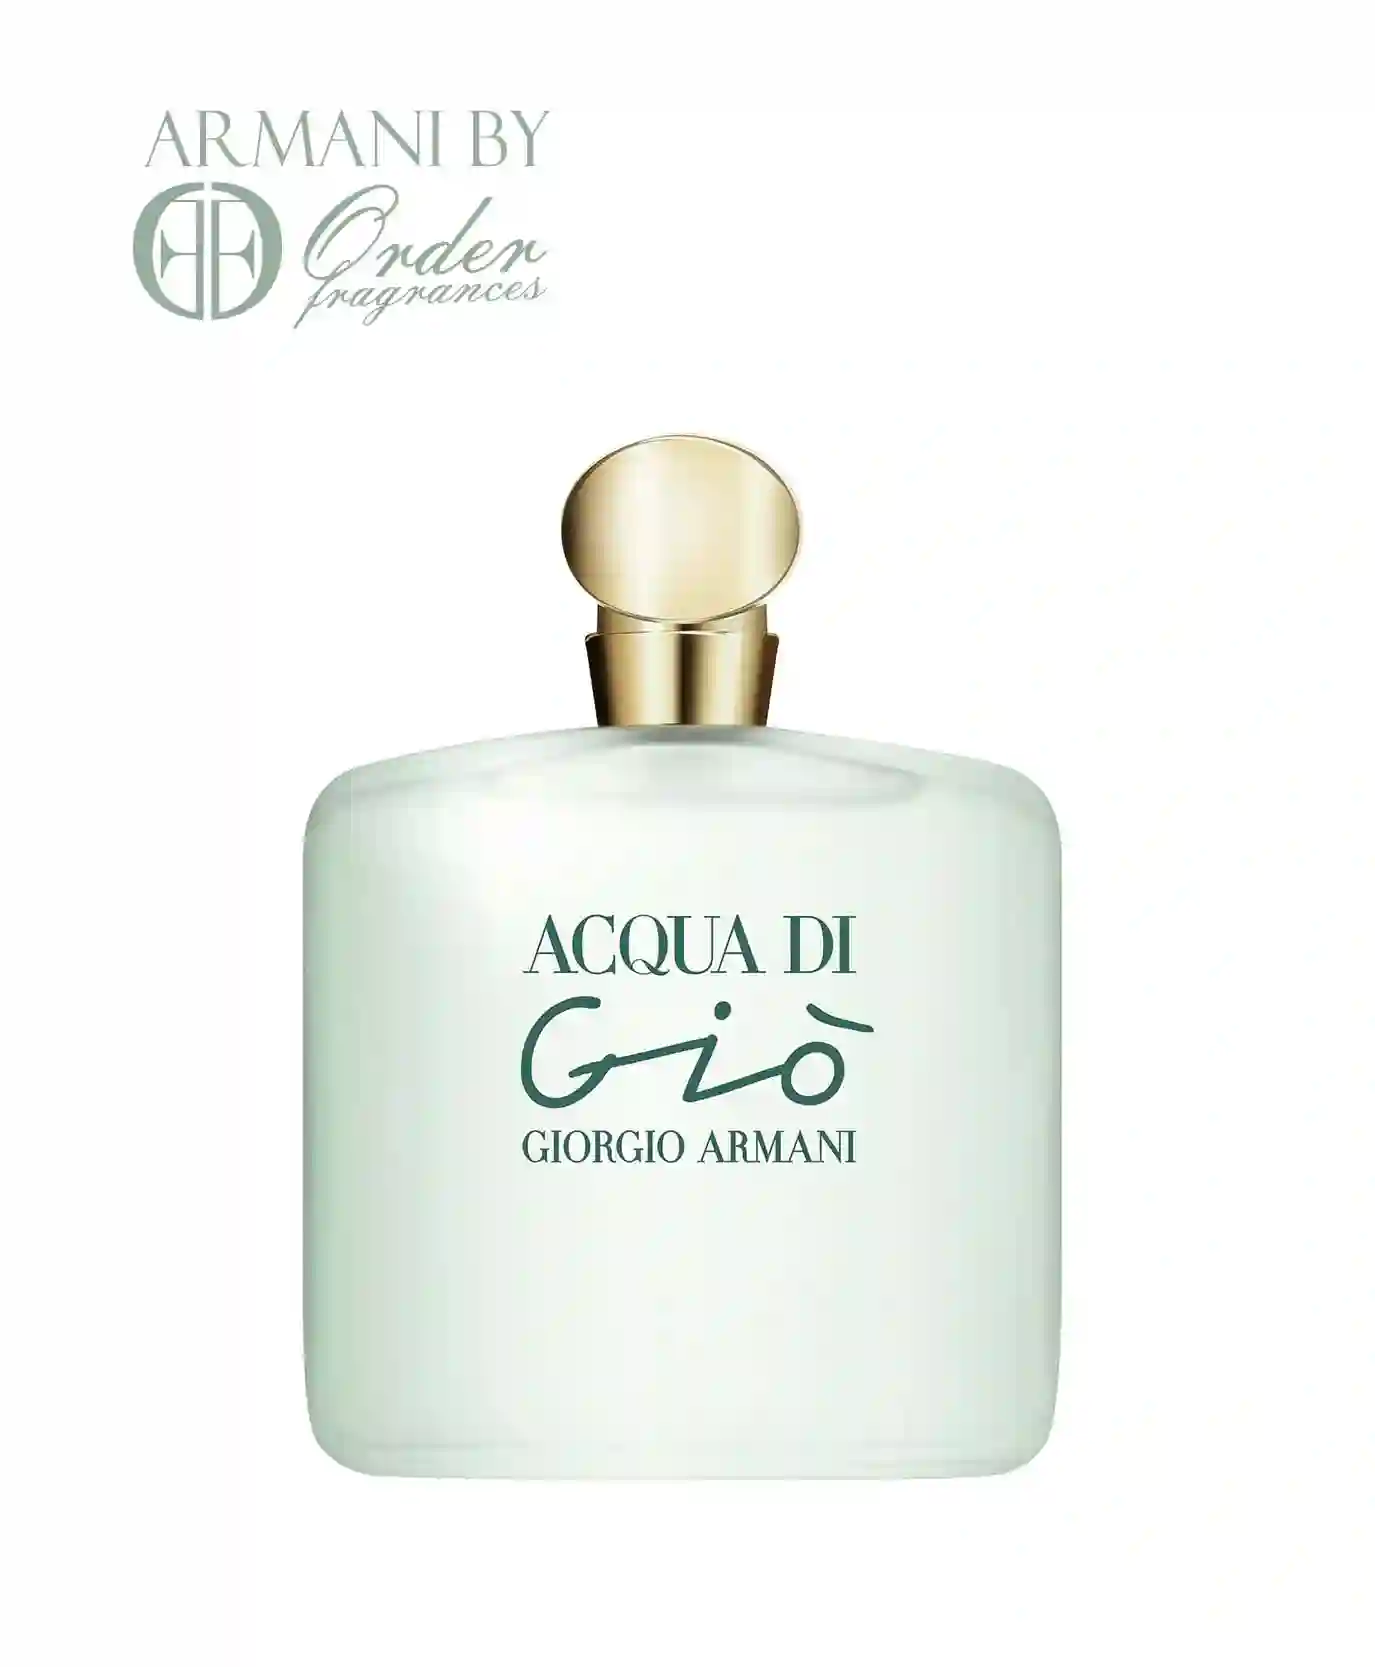 GIORGIO ARMANI Acqua Di Gio Perfume for Women. Eau De Toilette Spray 3.4 oz100 Ml